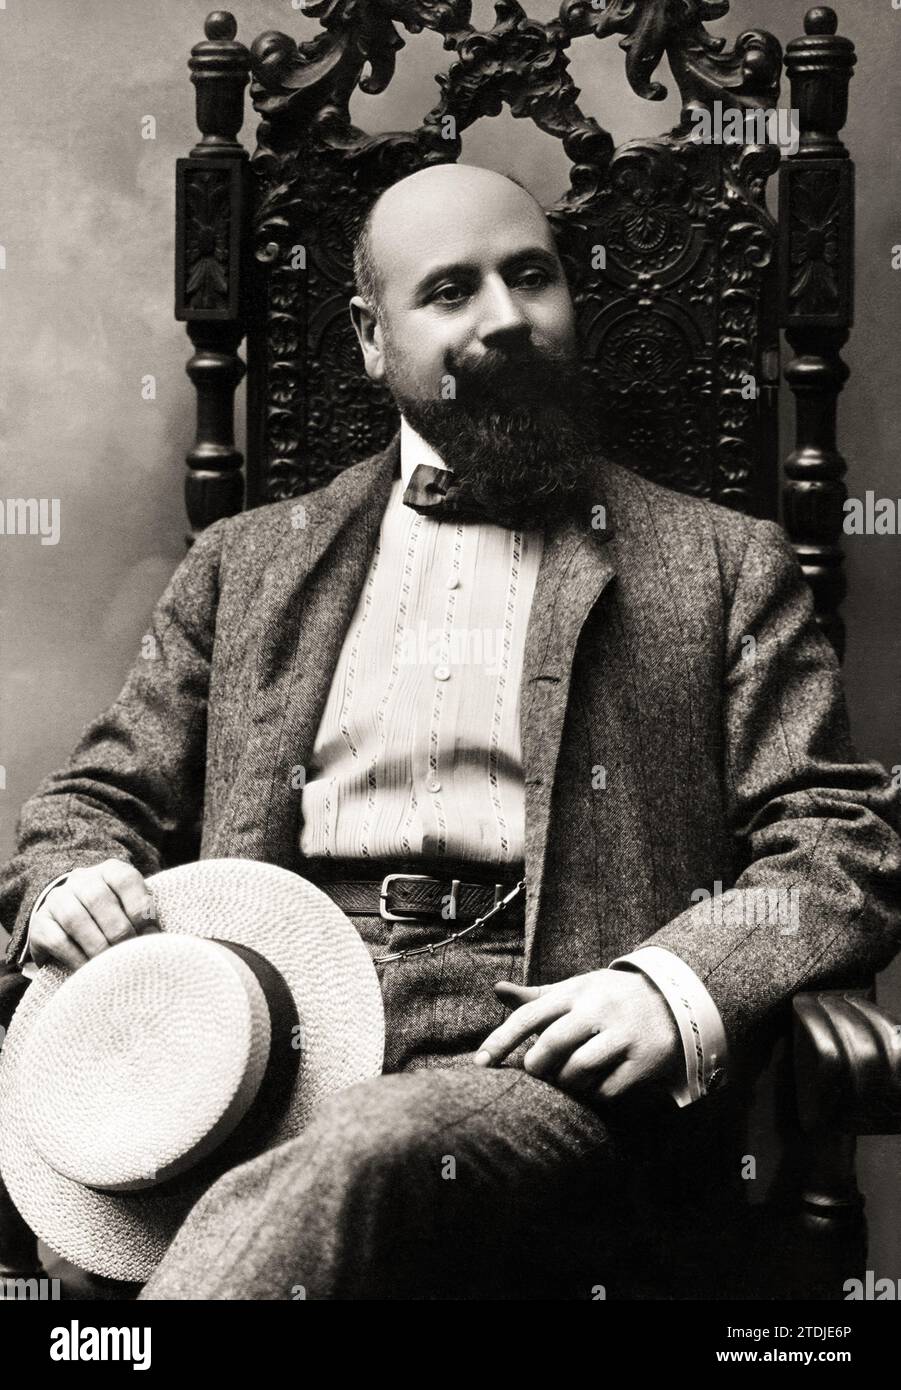 1905 c., Milano , ITALIA : il compositore italiano ARTURO BUZZI PECCIA ( Buzzi-Peccia , 1854 - 1946 ). Fotografo sconosciuto .- compagne - OPERA LIRICA - MUSICA CLASSICA - MUSICA CLASSICA - cravatta - cravatta - papillon - barba - barba - barba - ITALIA - STORIA - FOTO STORICHE - RITRATTO - RITRATTO - paglietta - cappello - Archivio GBB Foto Stock